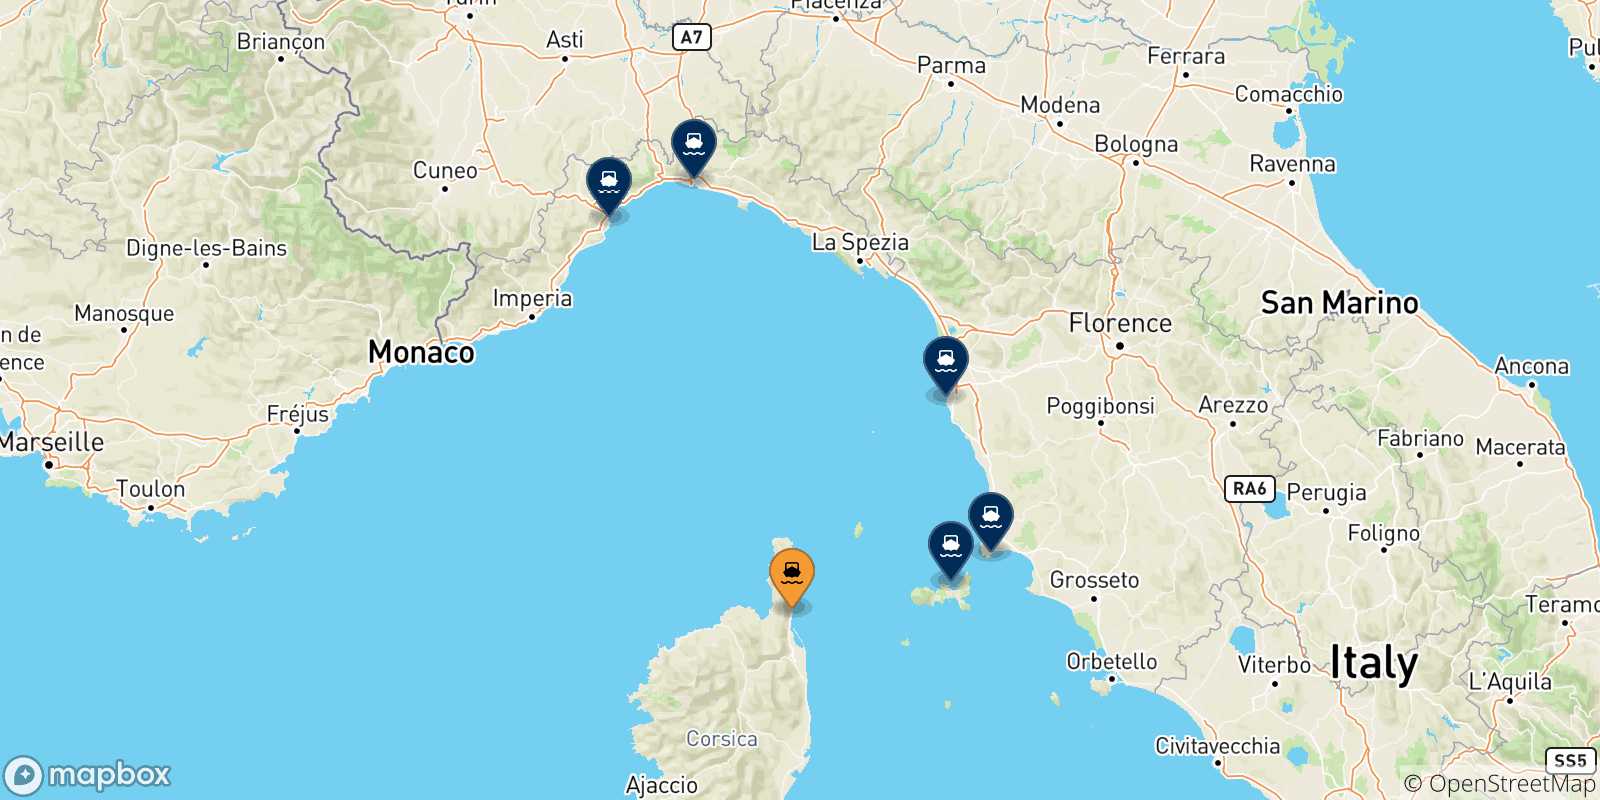 Mappa delle possibili rotte tra Bastia e l'Italia